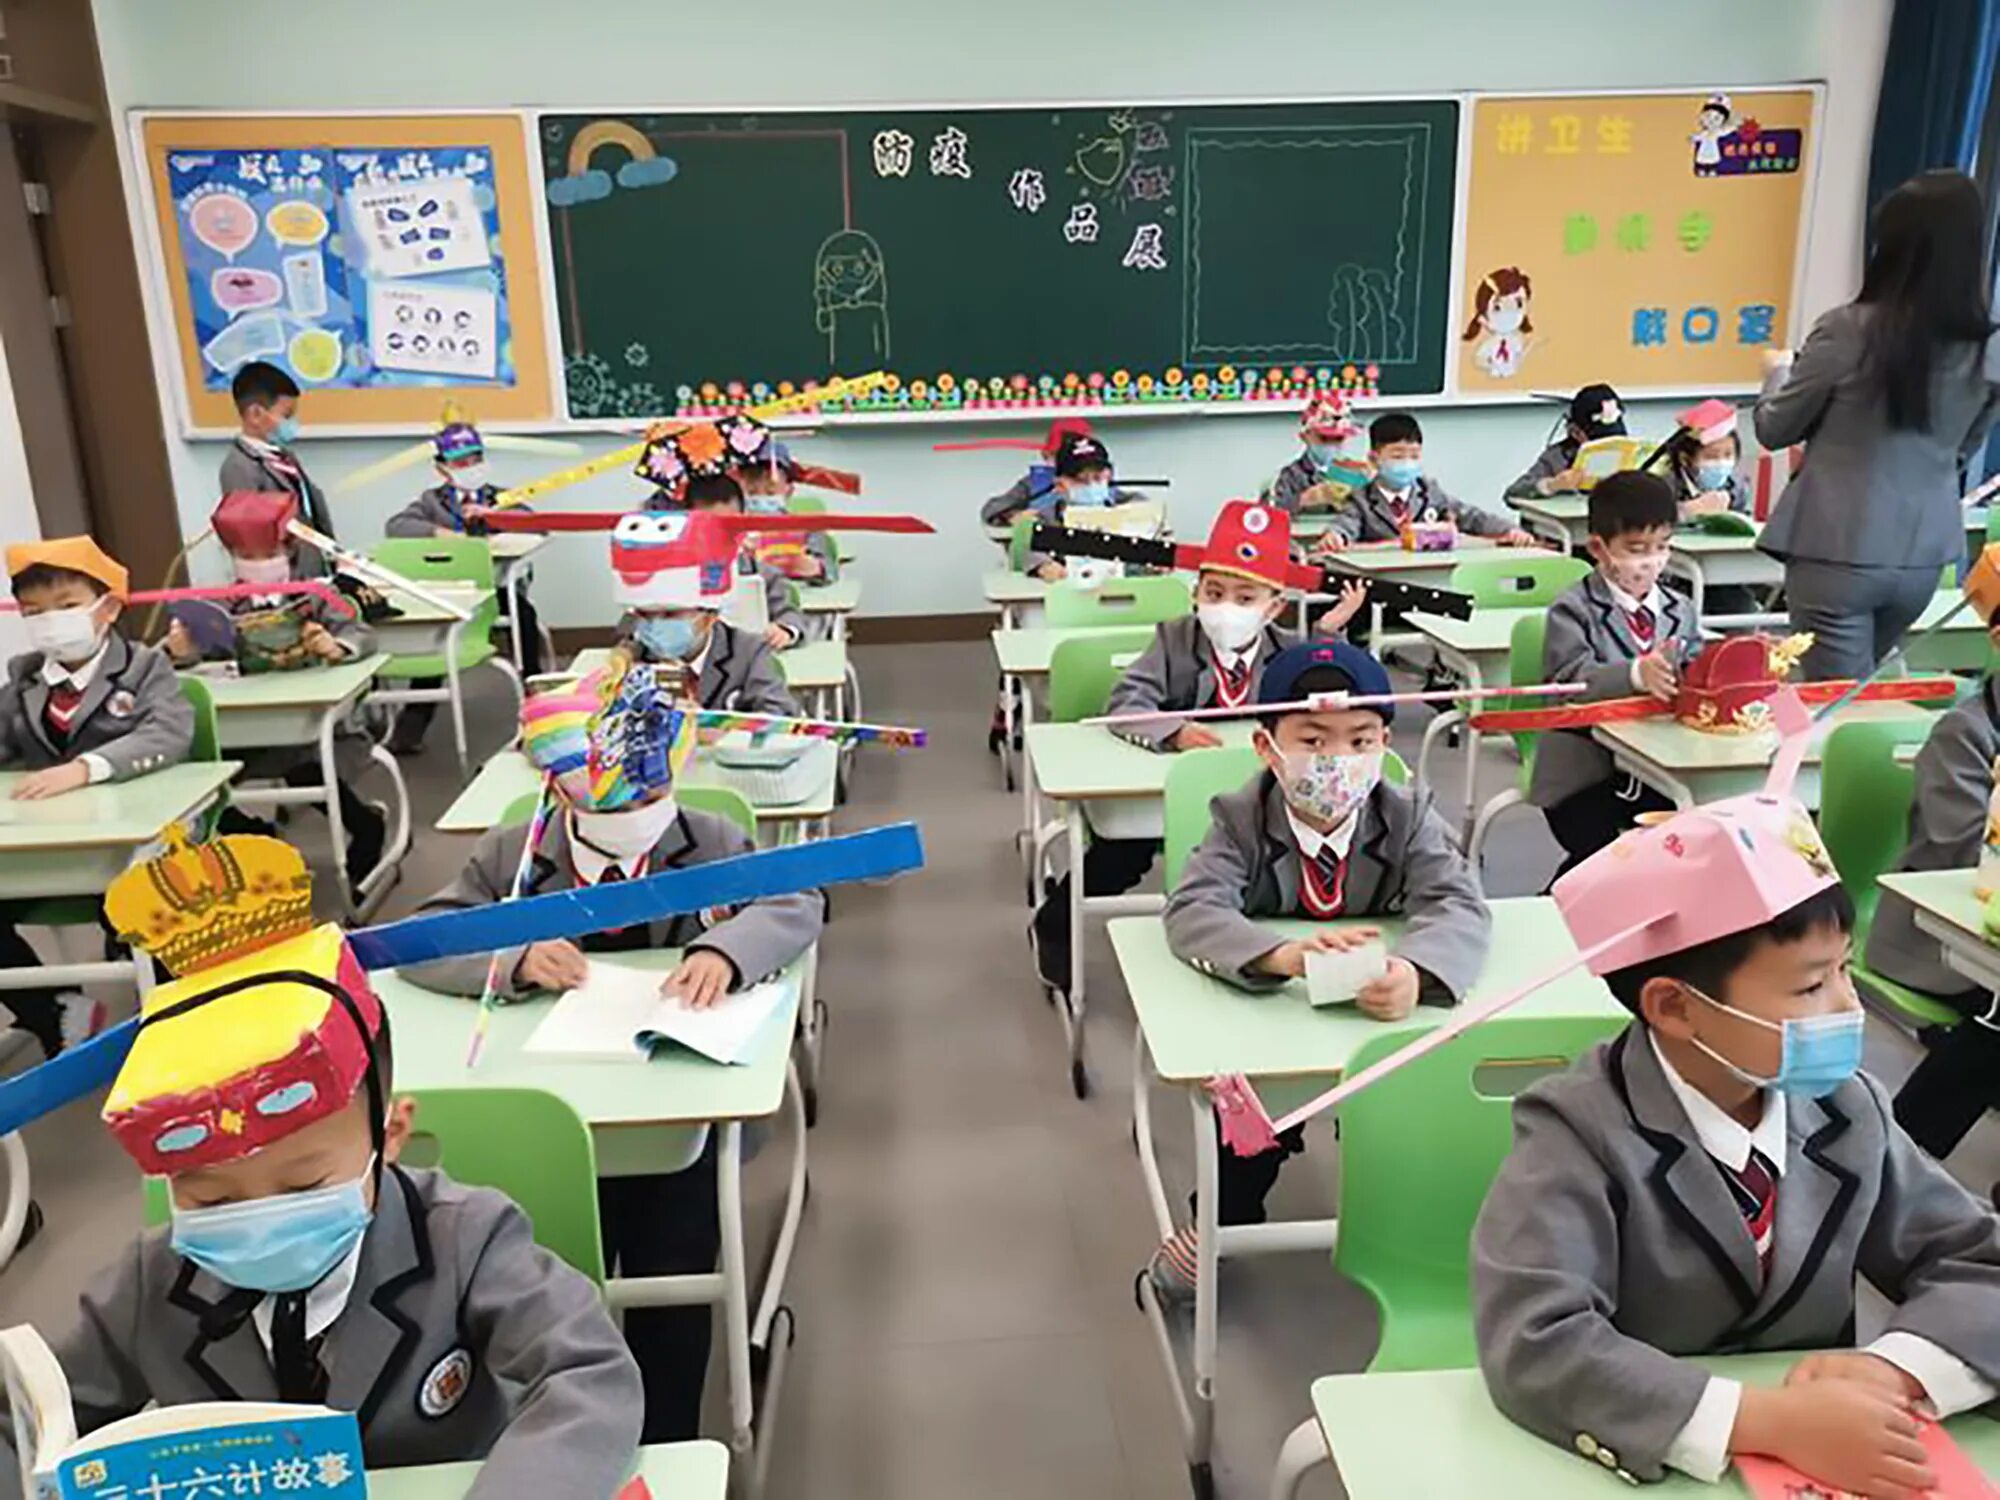 Китайские школьники. Китайские дети в школе. Урок в китайской школе. Начальная школа в Китае. В школе китайский изучает 60 учащихся